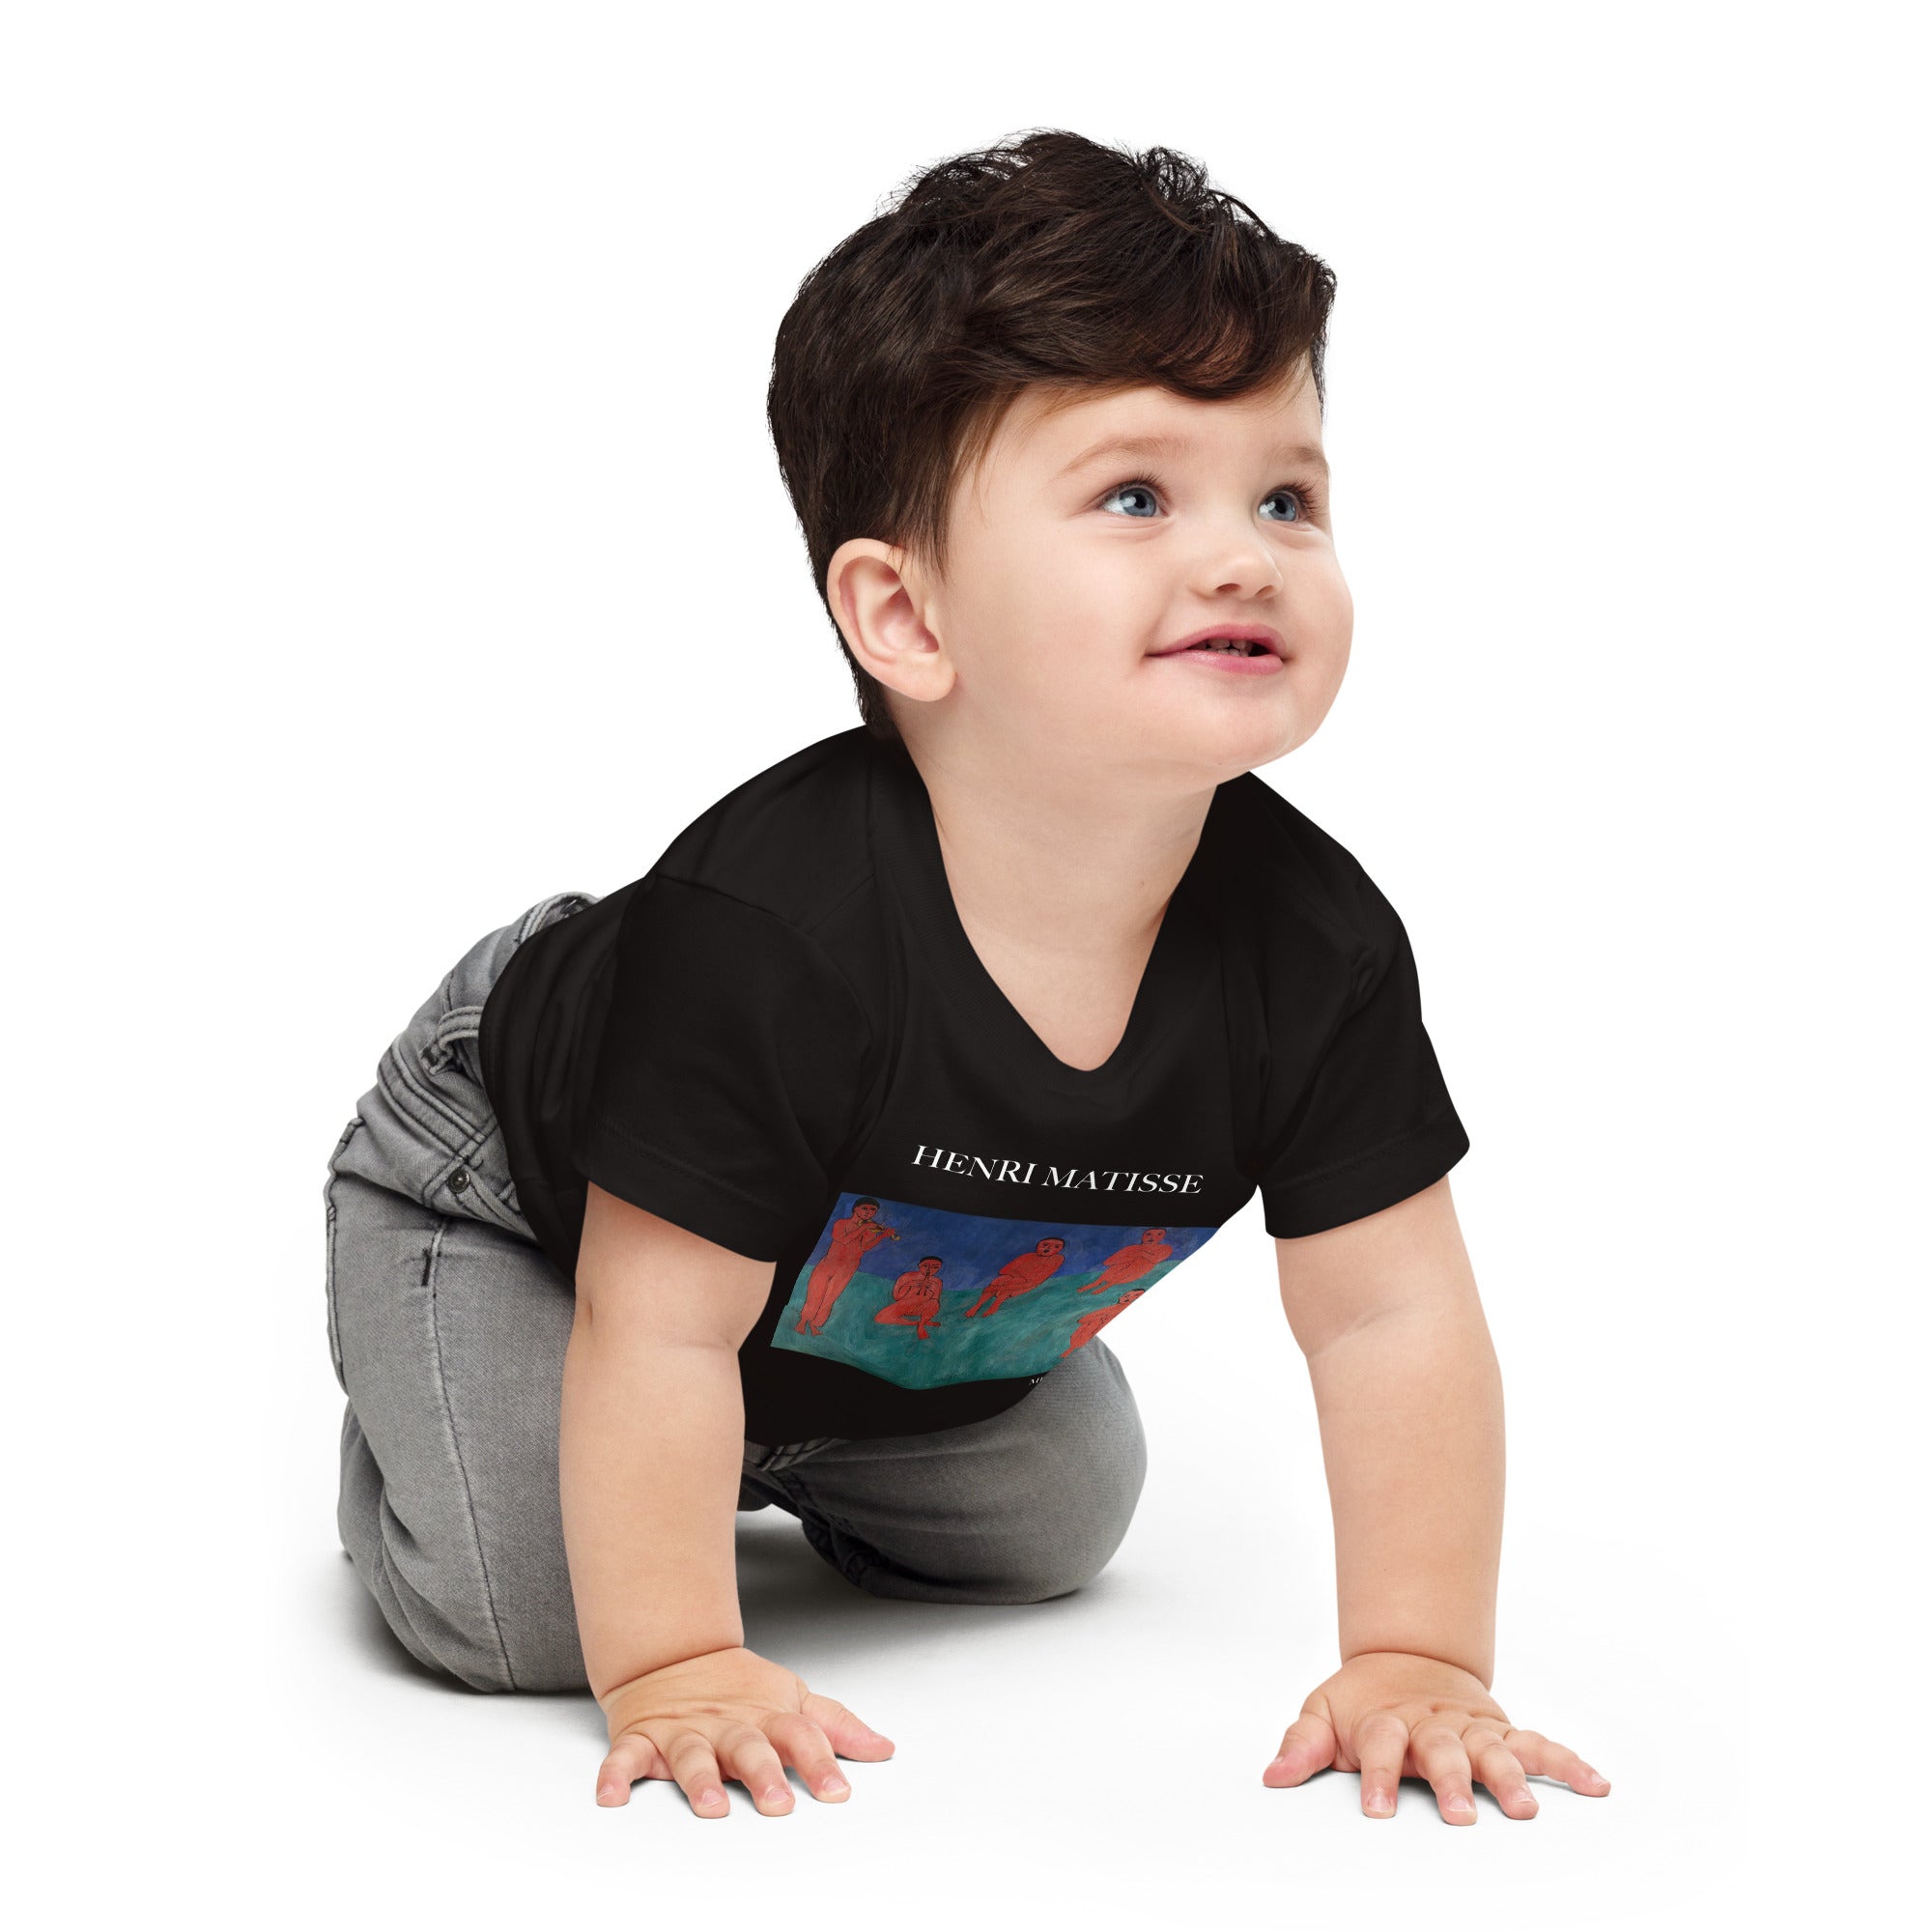 Henri Matisse 'Music' Famous Painting Baby Staple T-Shirt | Premium Baby Art Tee